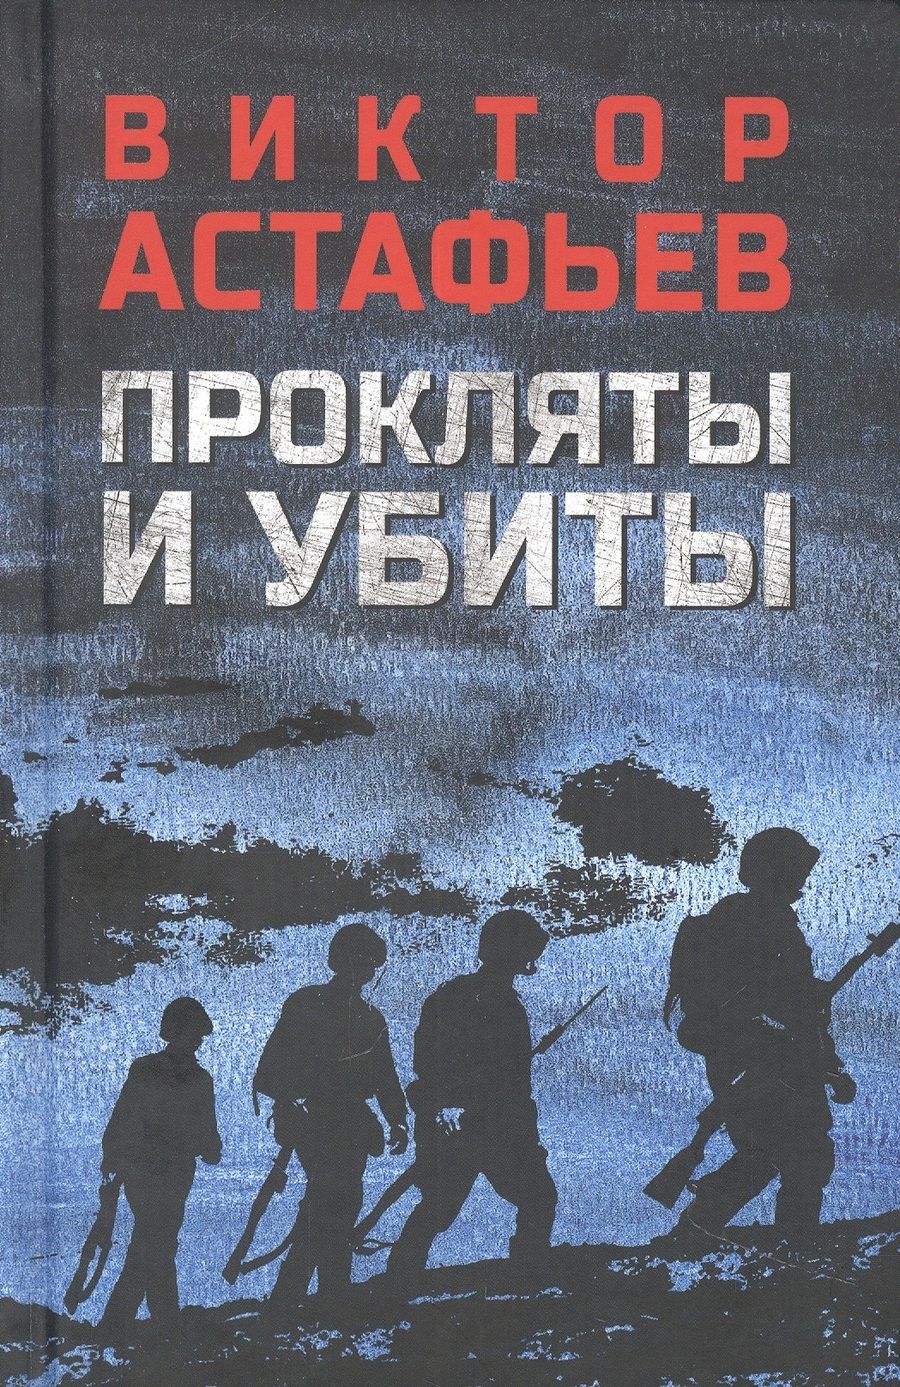 Обложка книги "Астафьев: Прокляты и убиты"